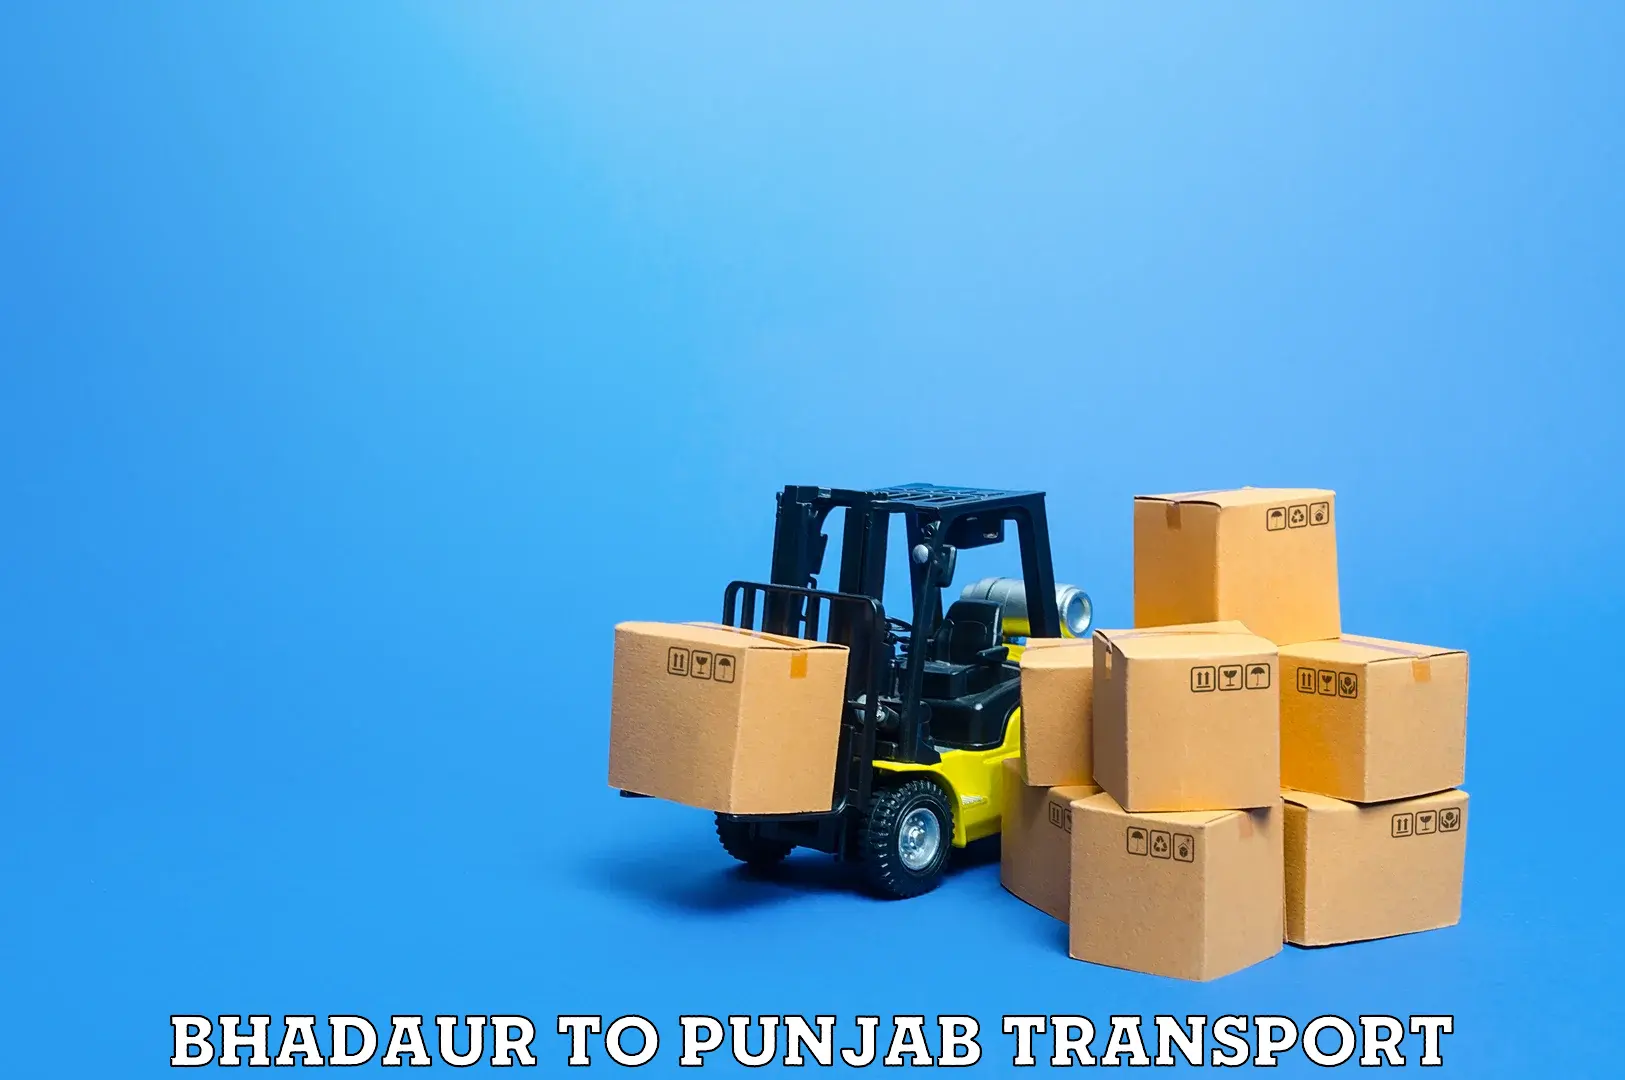 Pick up transport service Bhadaur to Garhshankar